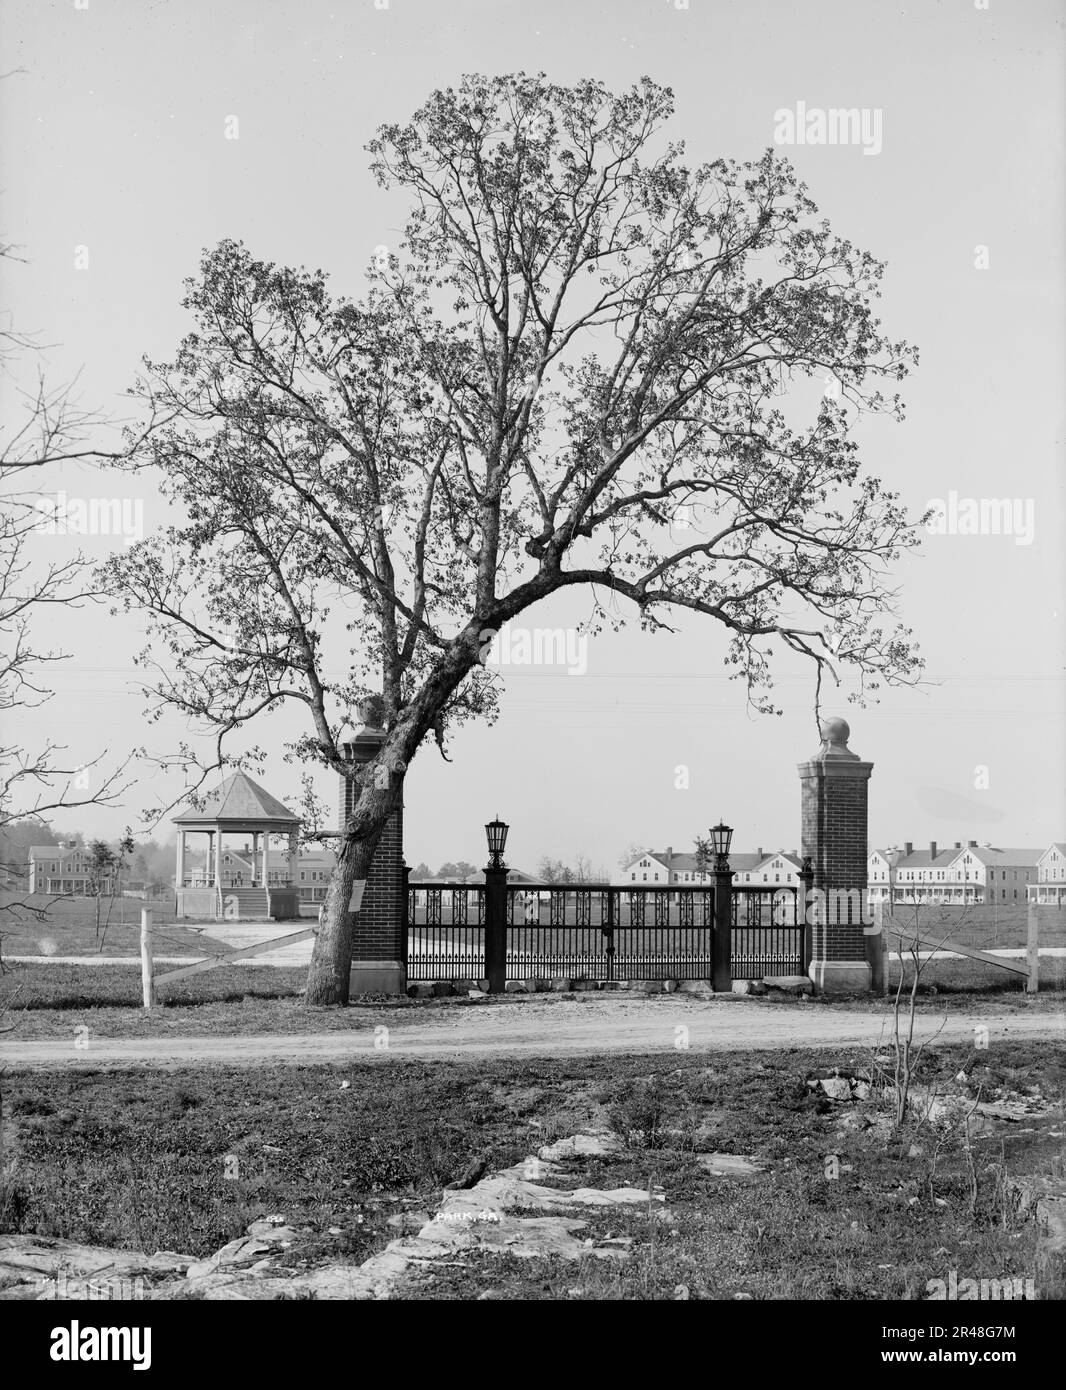 La porte de poste, fort Oglethorpe, parc militaire national Chicamauga-Chattanooga, Géorgie, entre 1900 et 1910. Banque D'Images